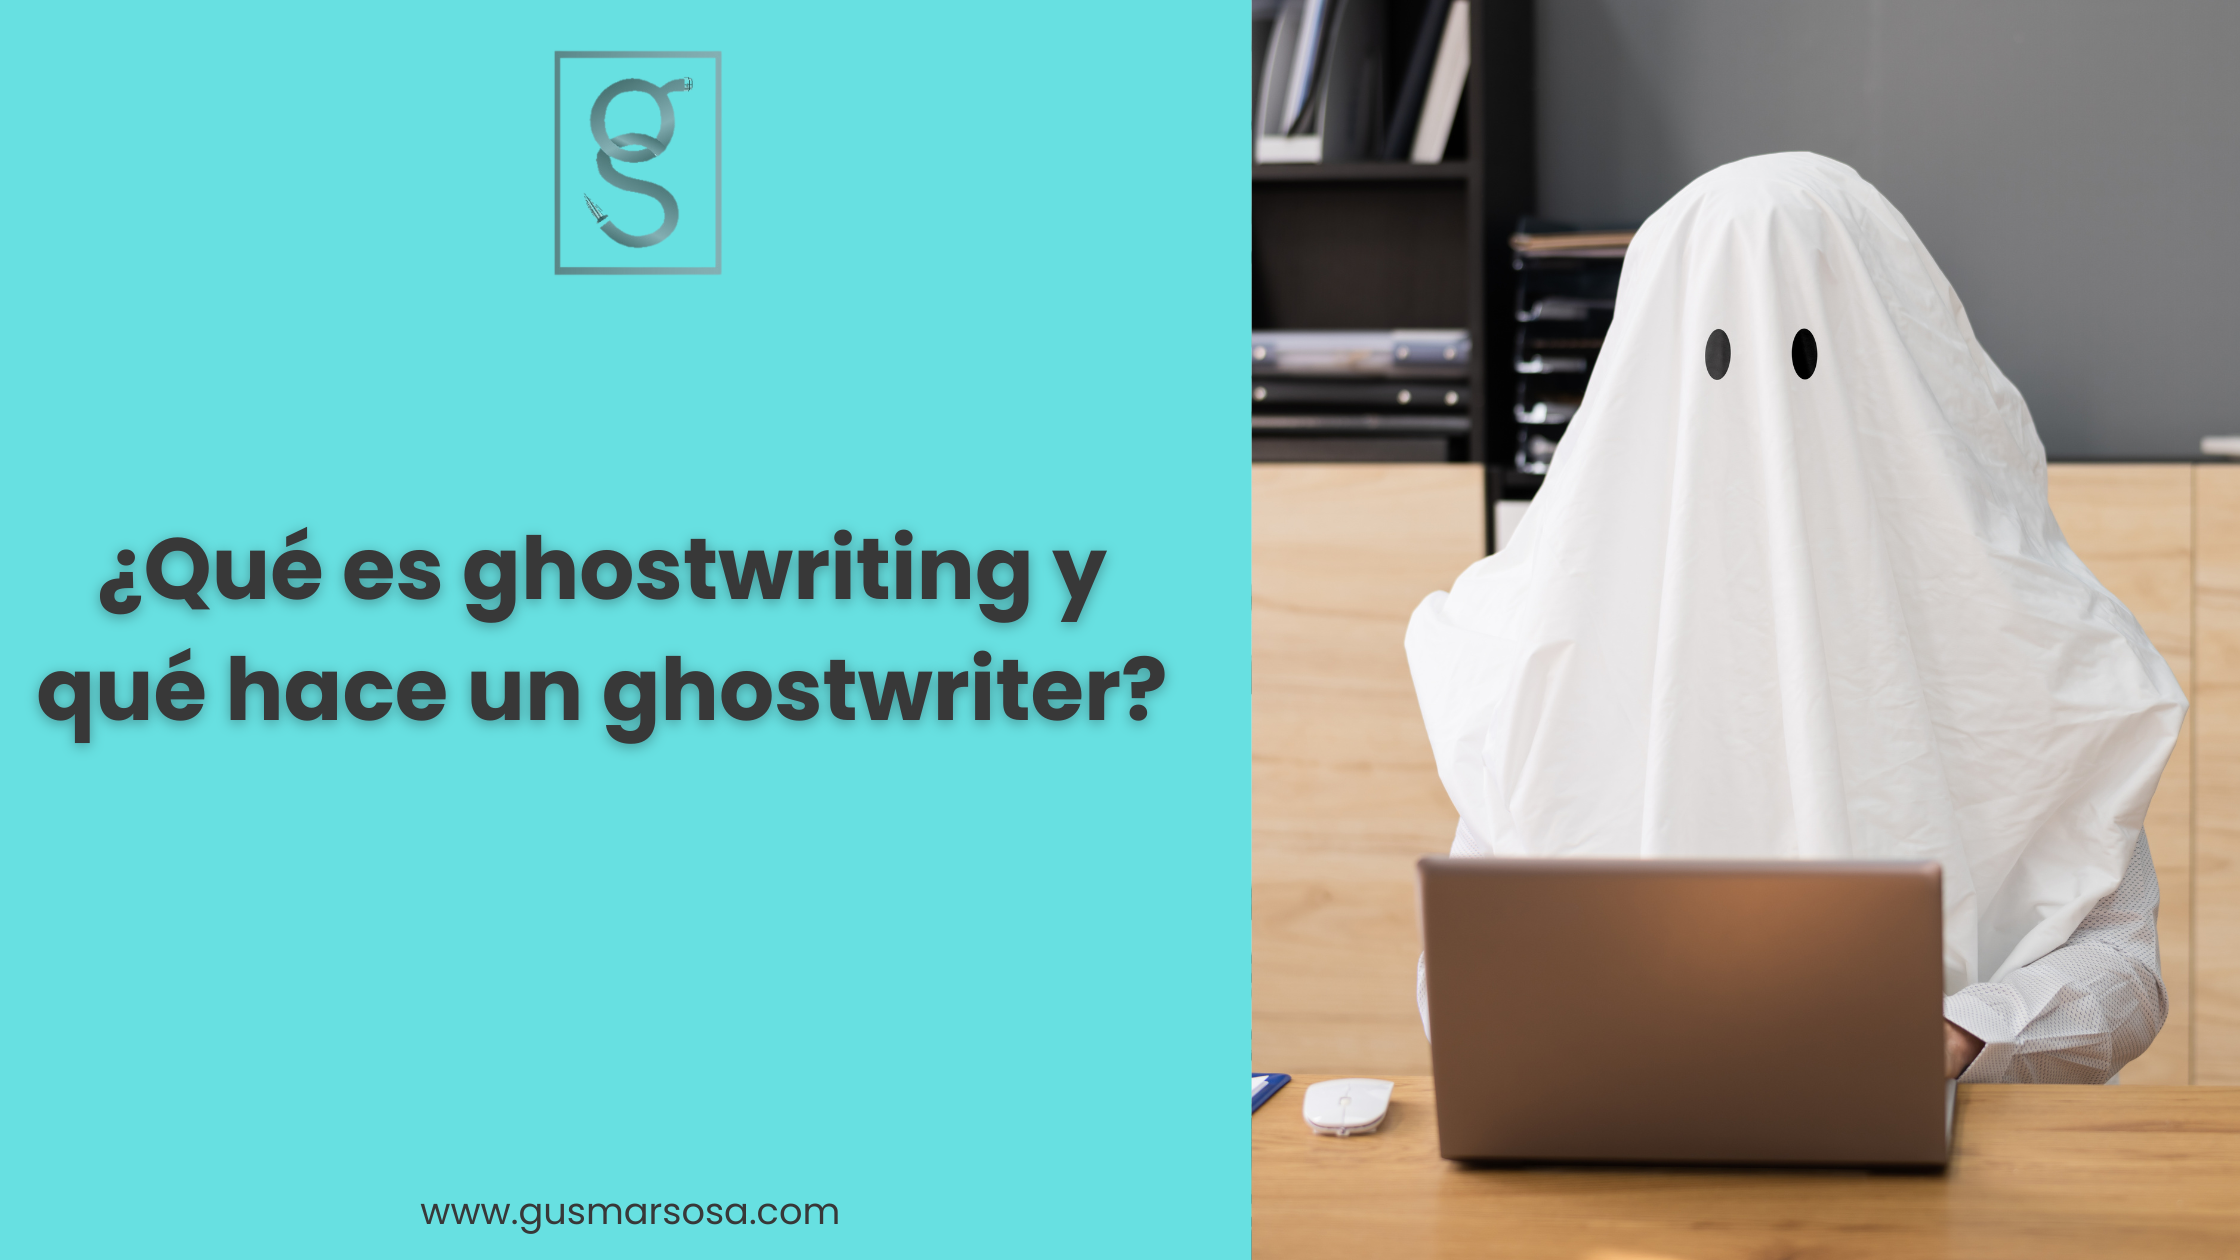 ¿Qué es ghostwriting y qué hace un ghostwriter?